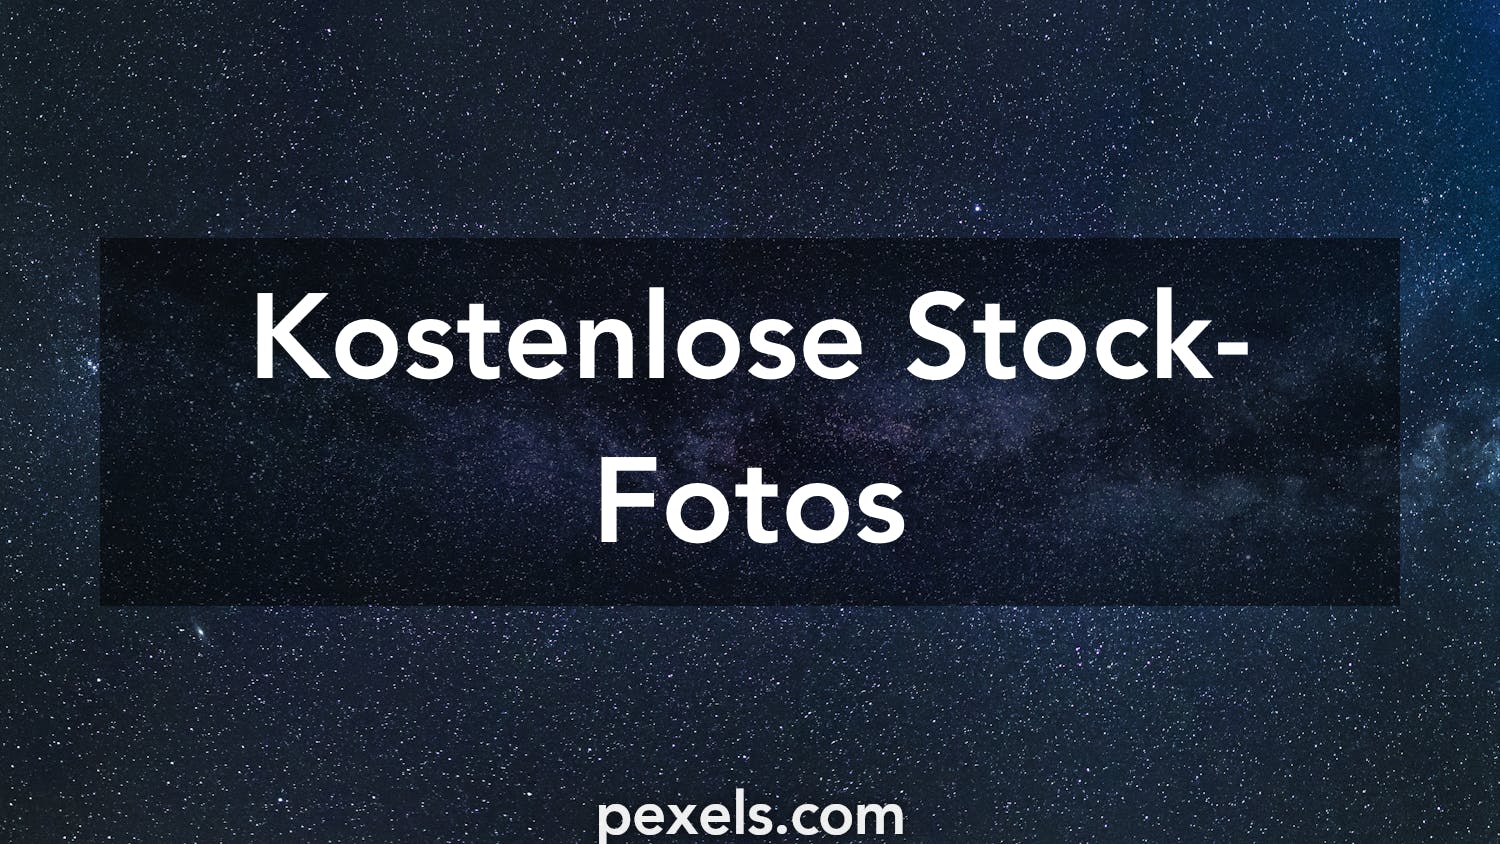 1000 Website Hintergrund Fotos Pexels Kostenlose Stock Fotos